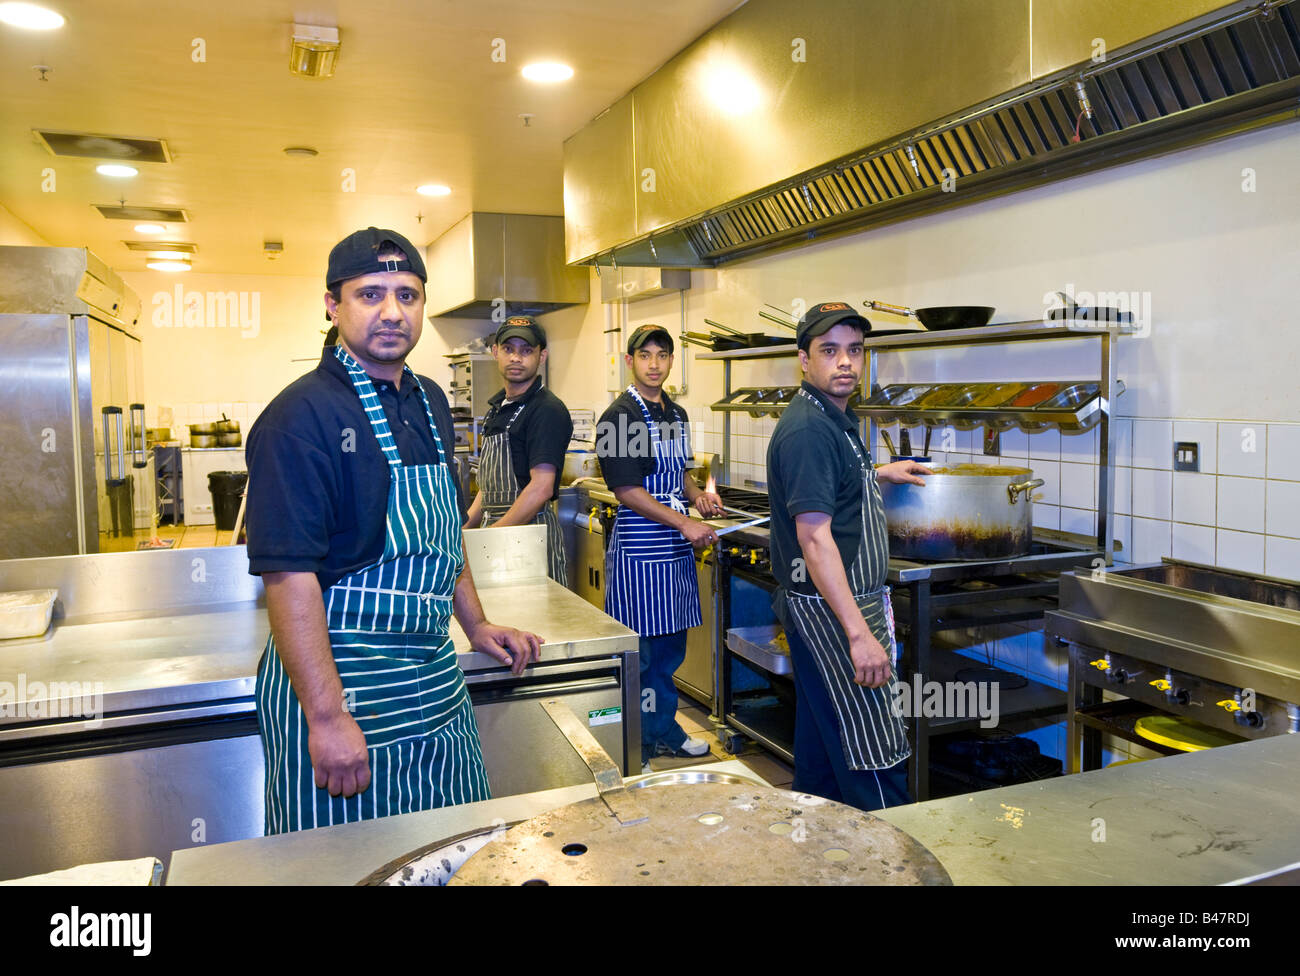 Le personnel de cuisine dans les cuisines à un restaurant indien au Royaume-Uni Banque D'Images